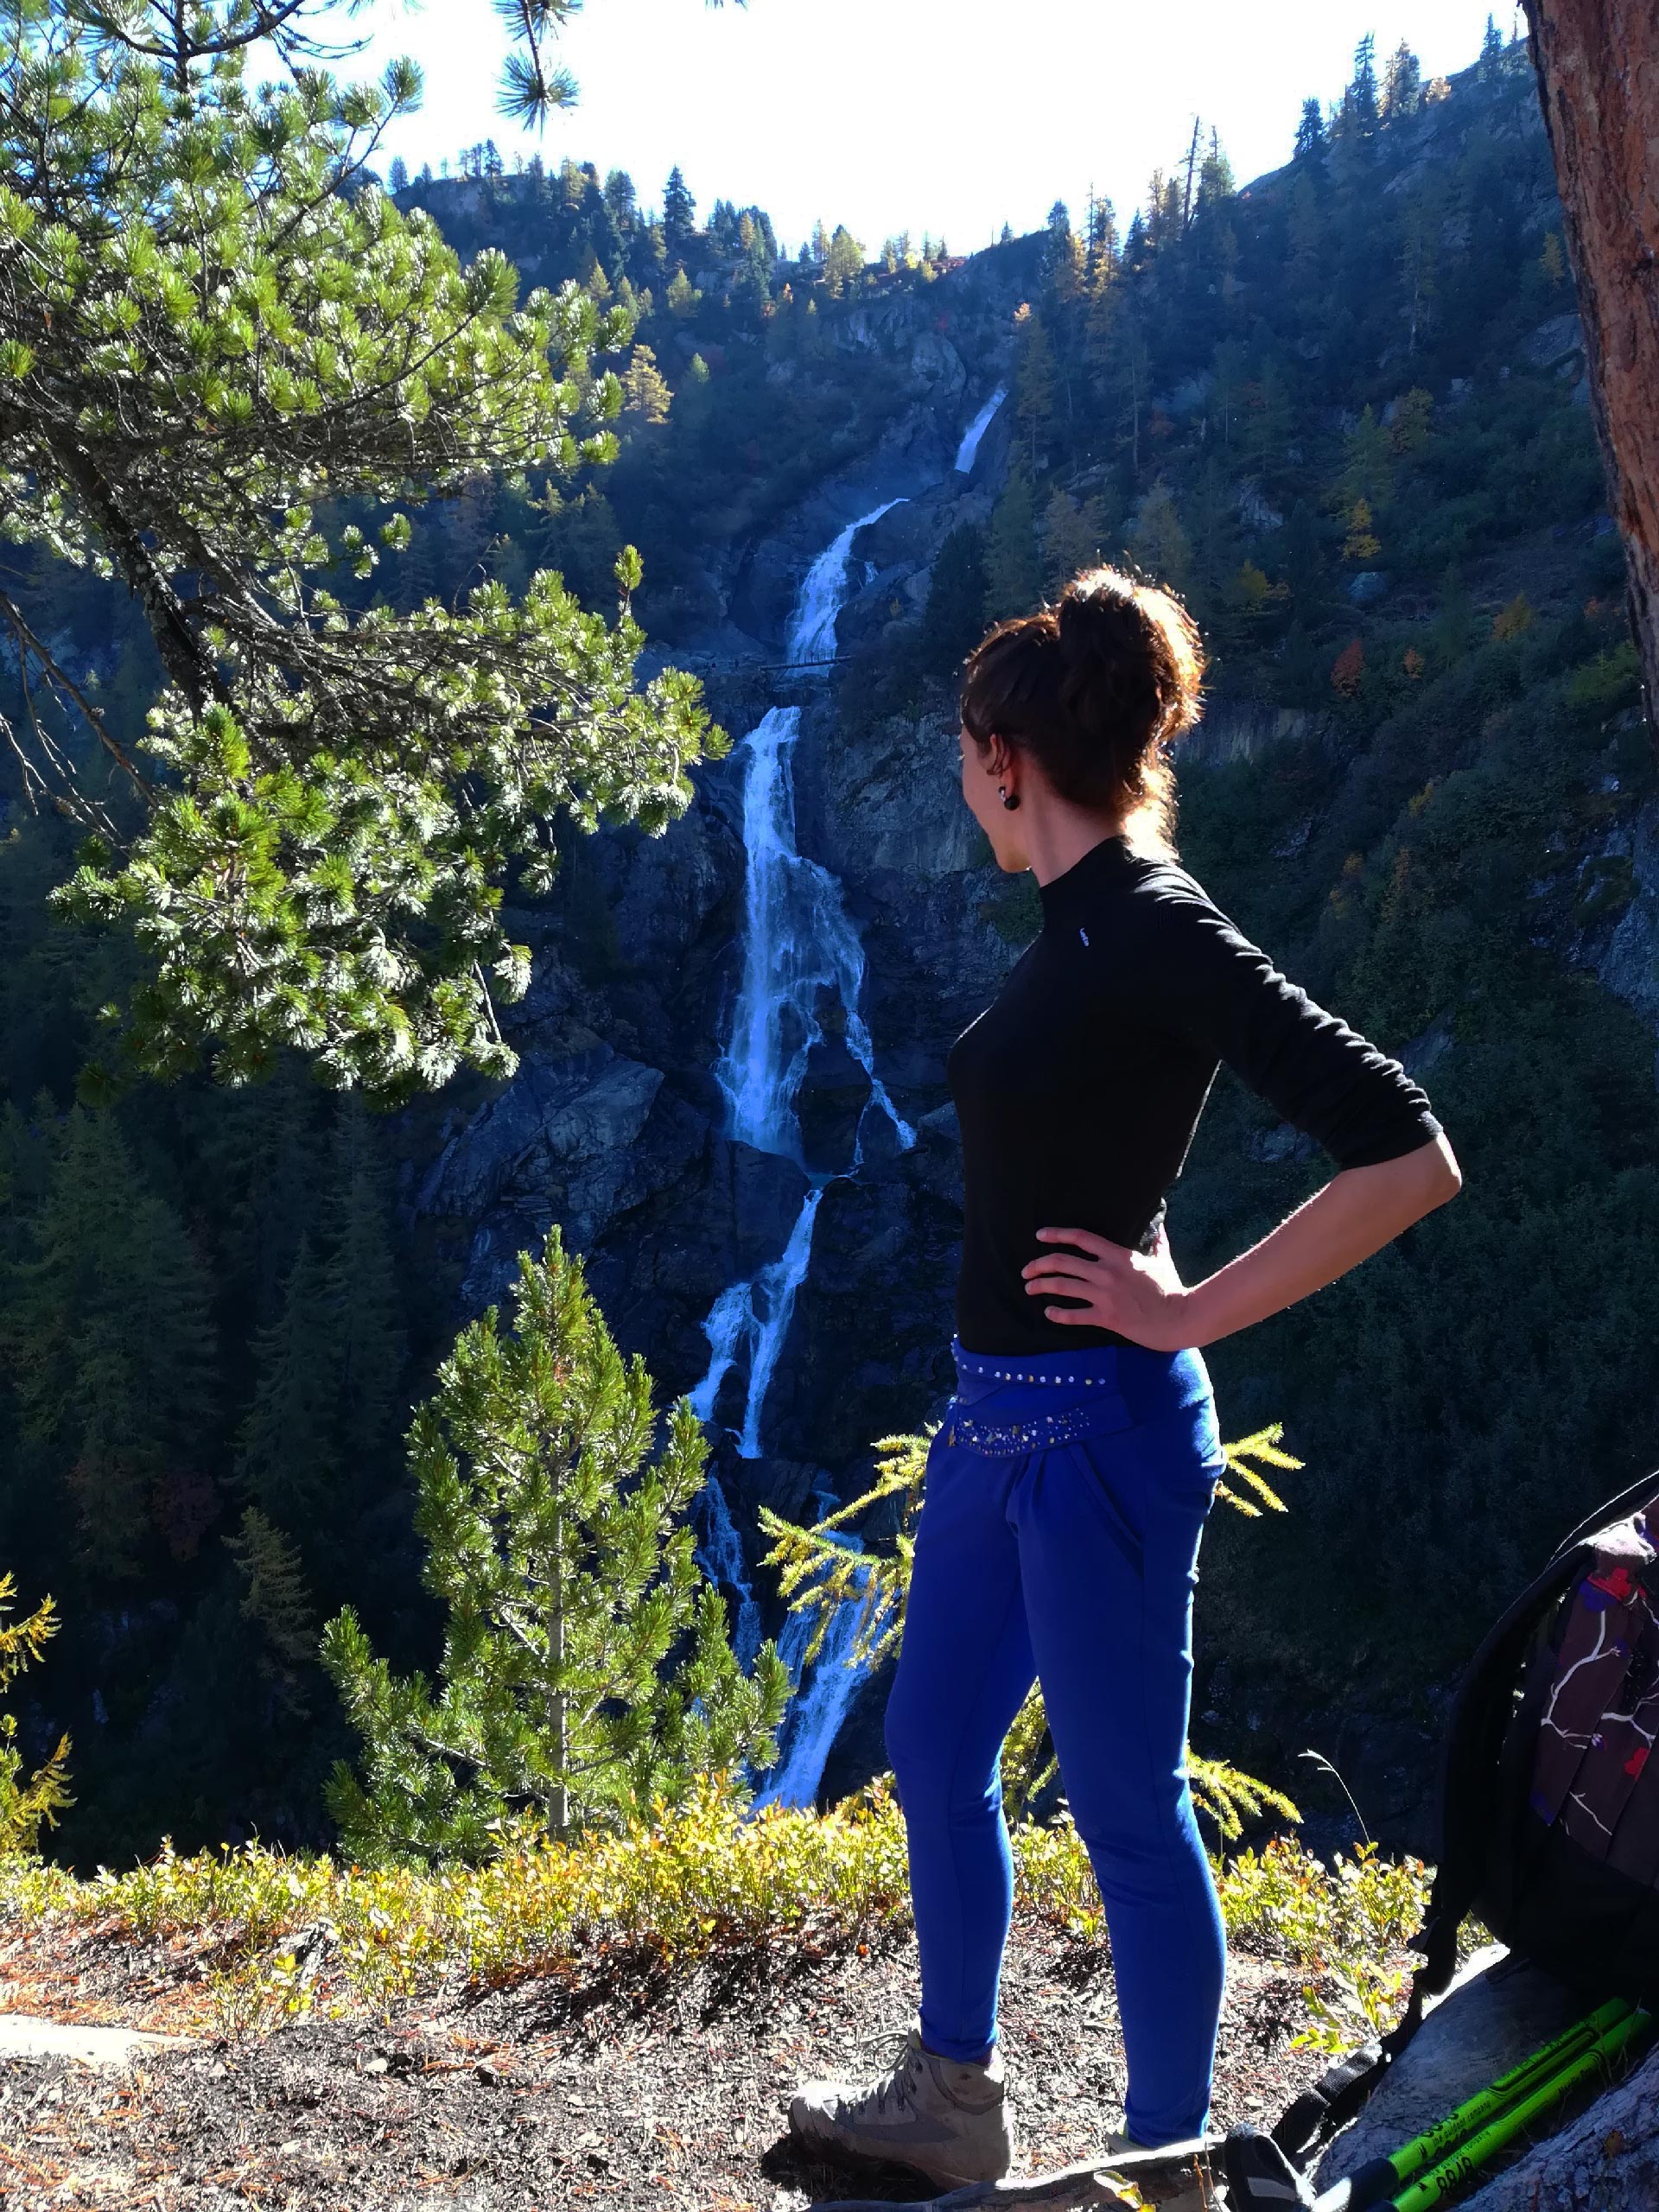 veduta della seconda cascata formata dal fiume Rutor, La Thuile, Valle d'Aosta